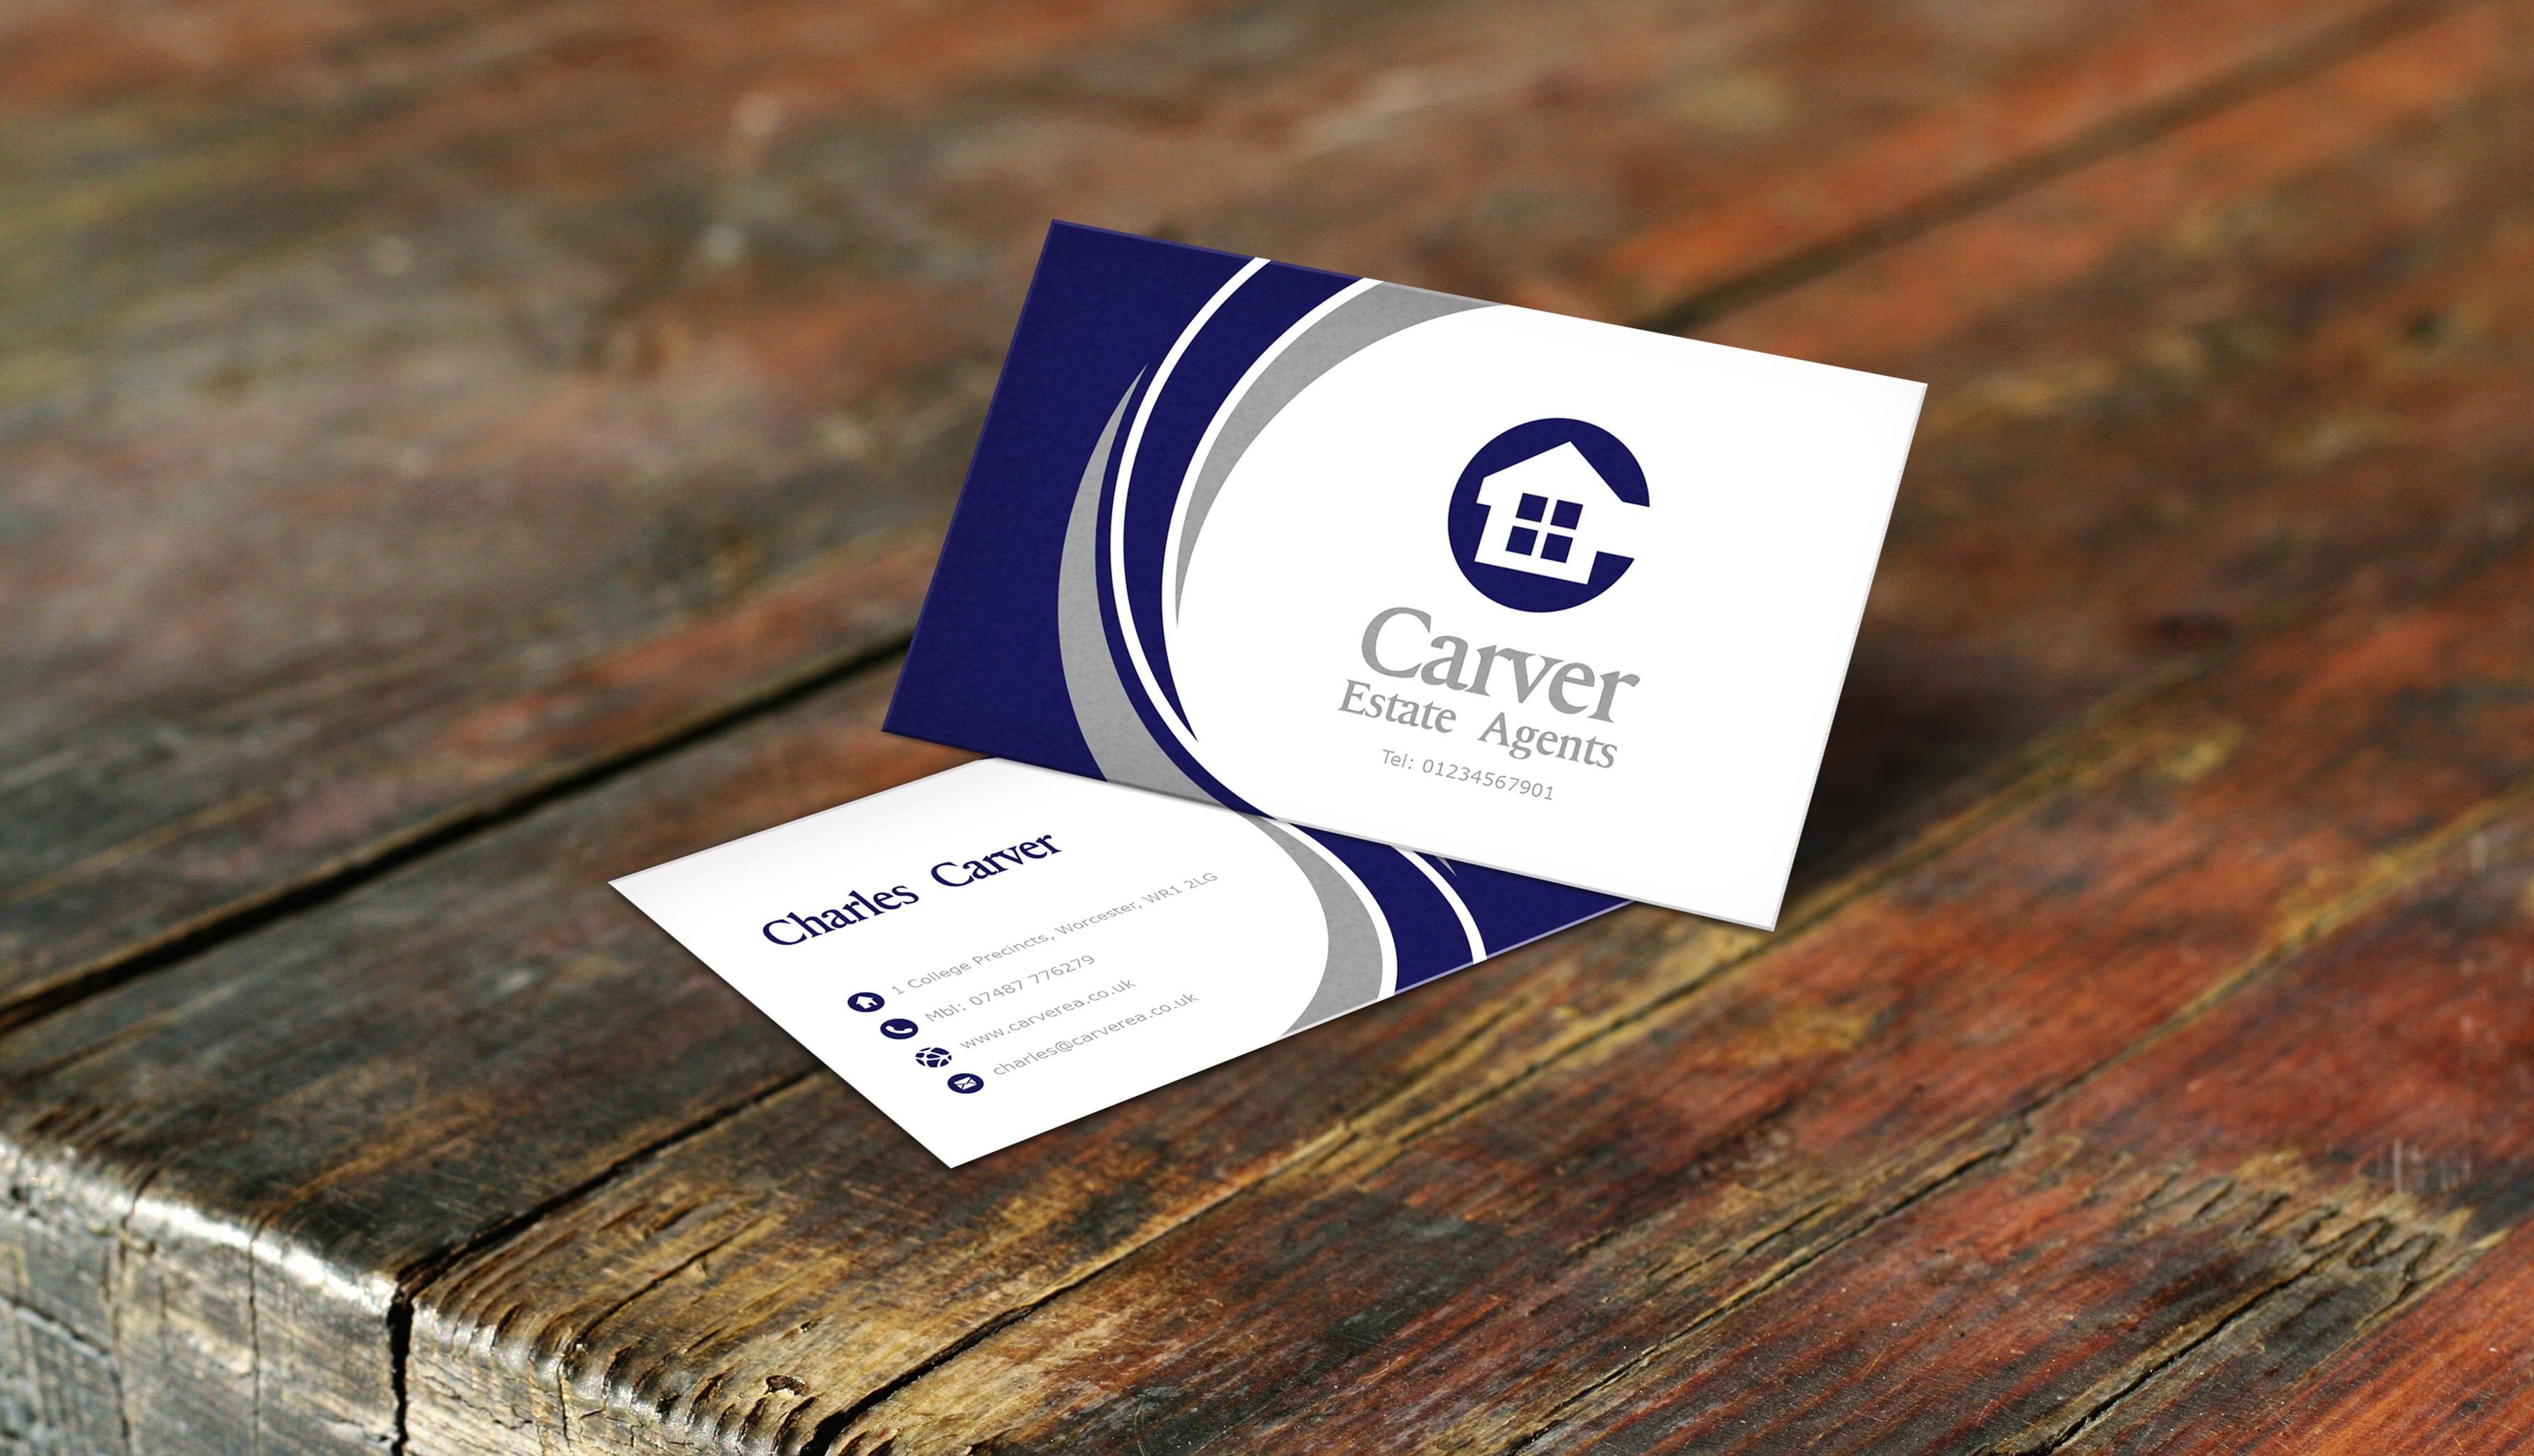 Carver Estate Agents - Business Cards